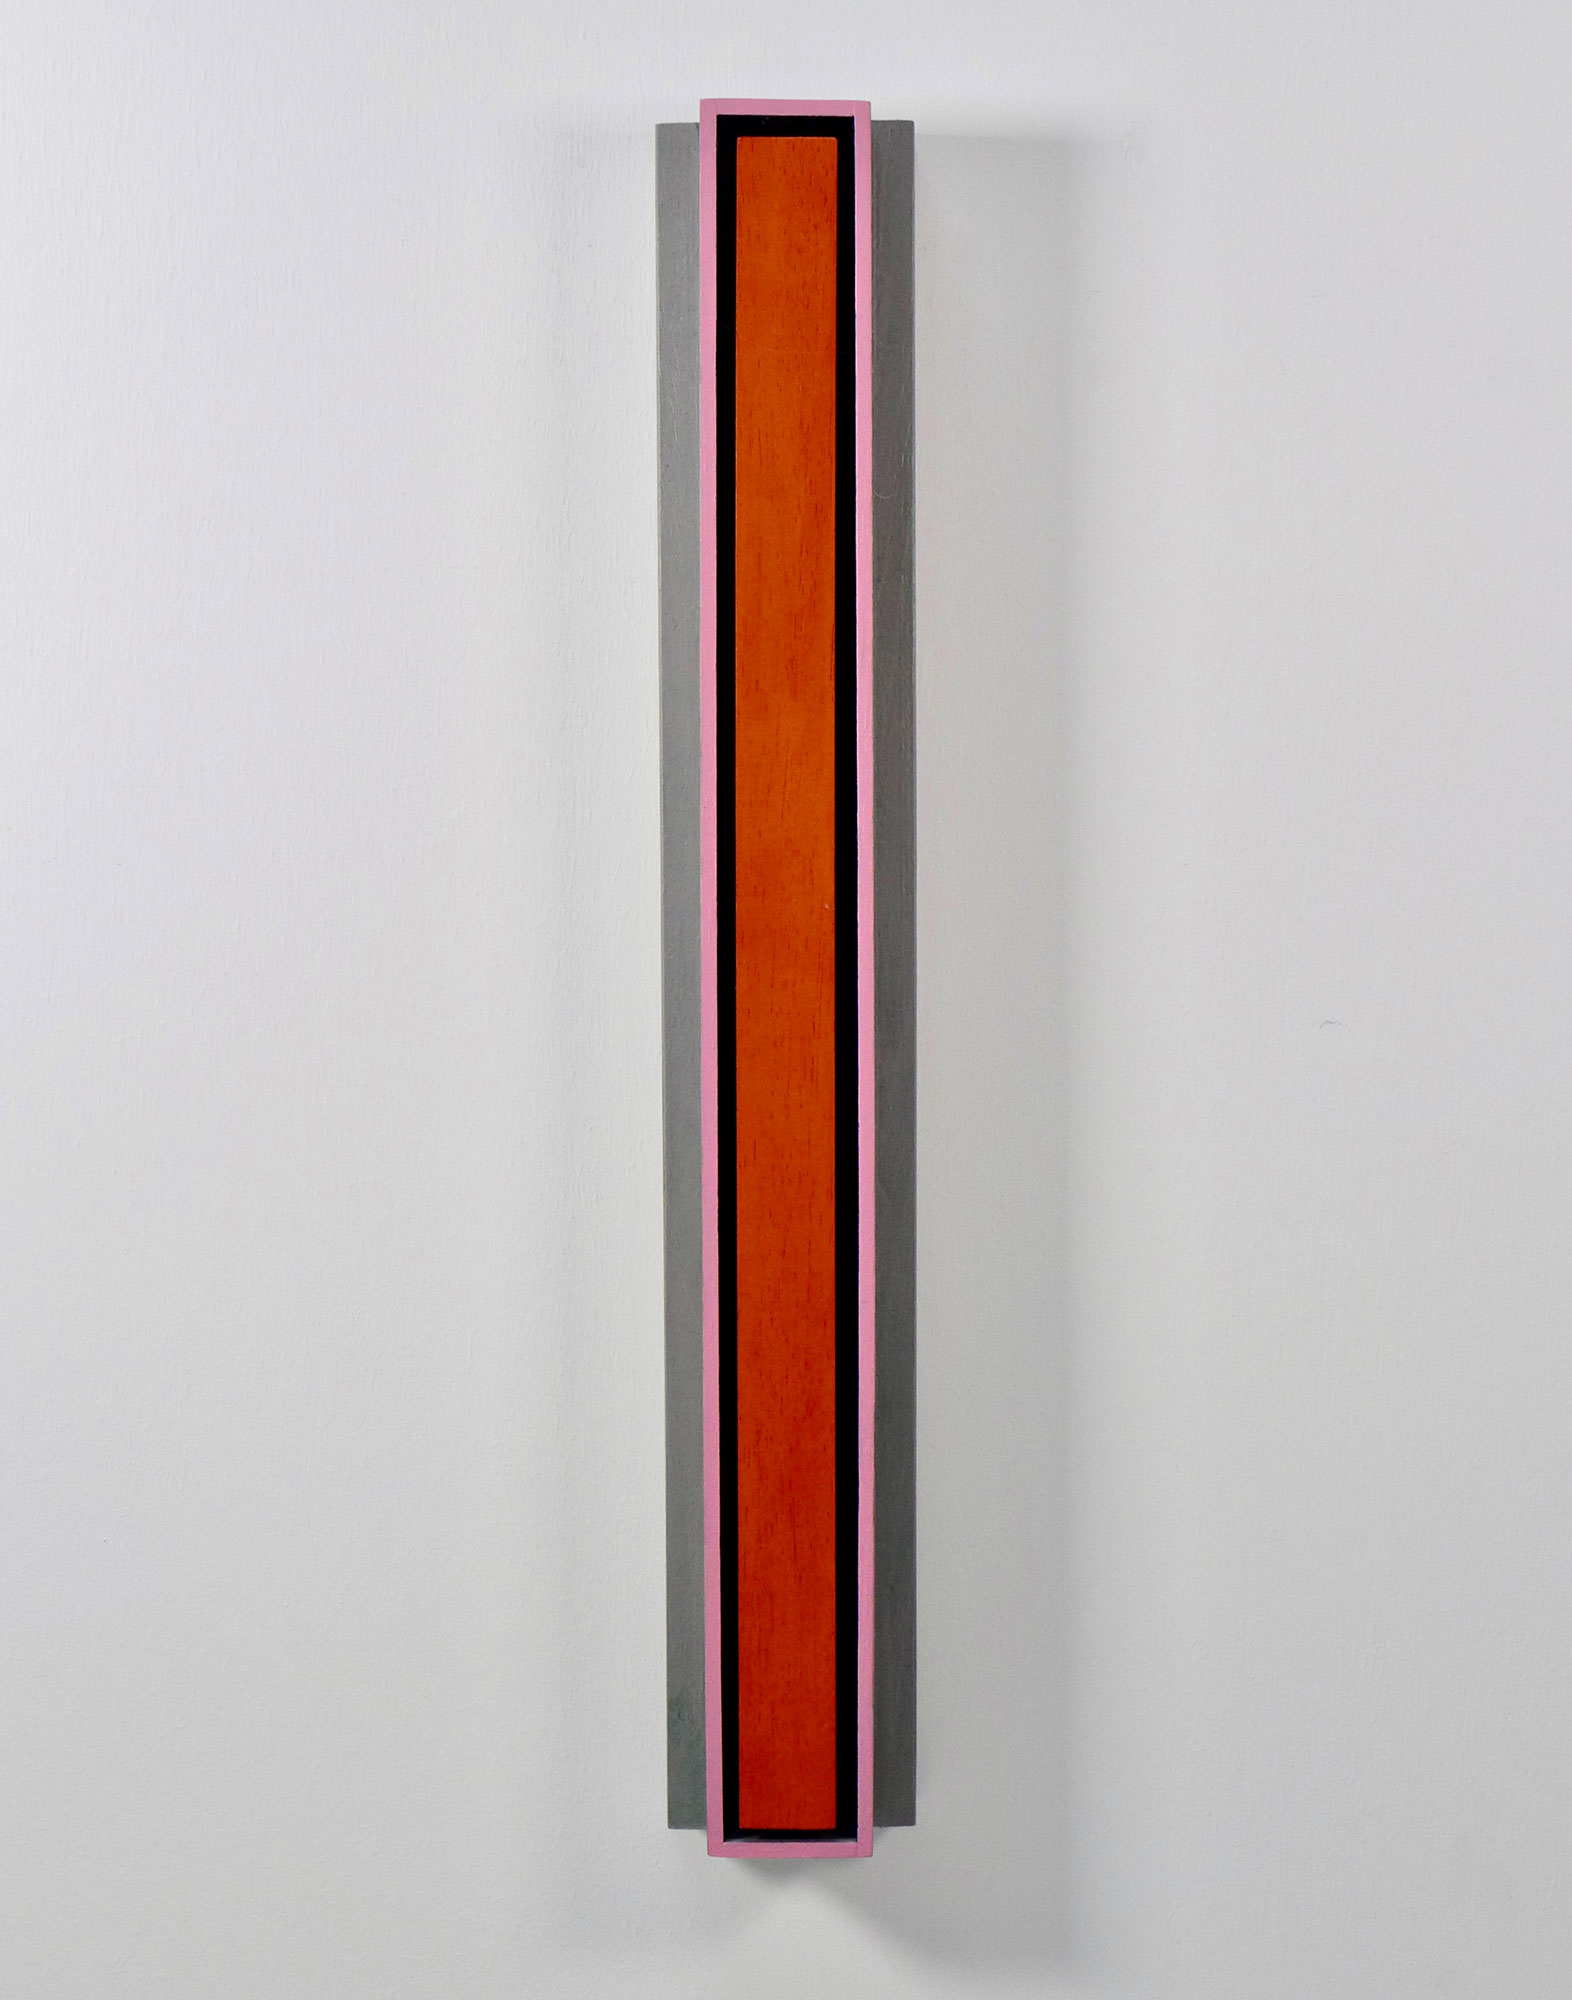 Kenneth Dingwall, Warm Front, 2009, acrylic on basswood, 61cm x 9cm x 6cm